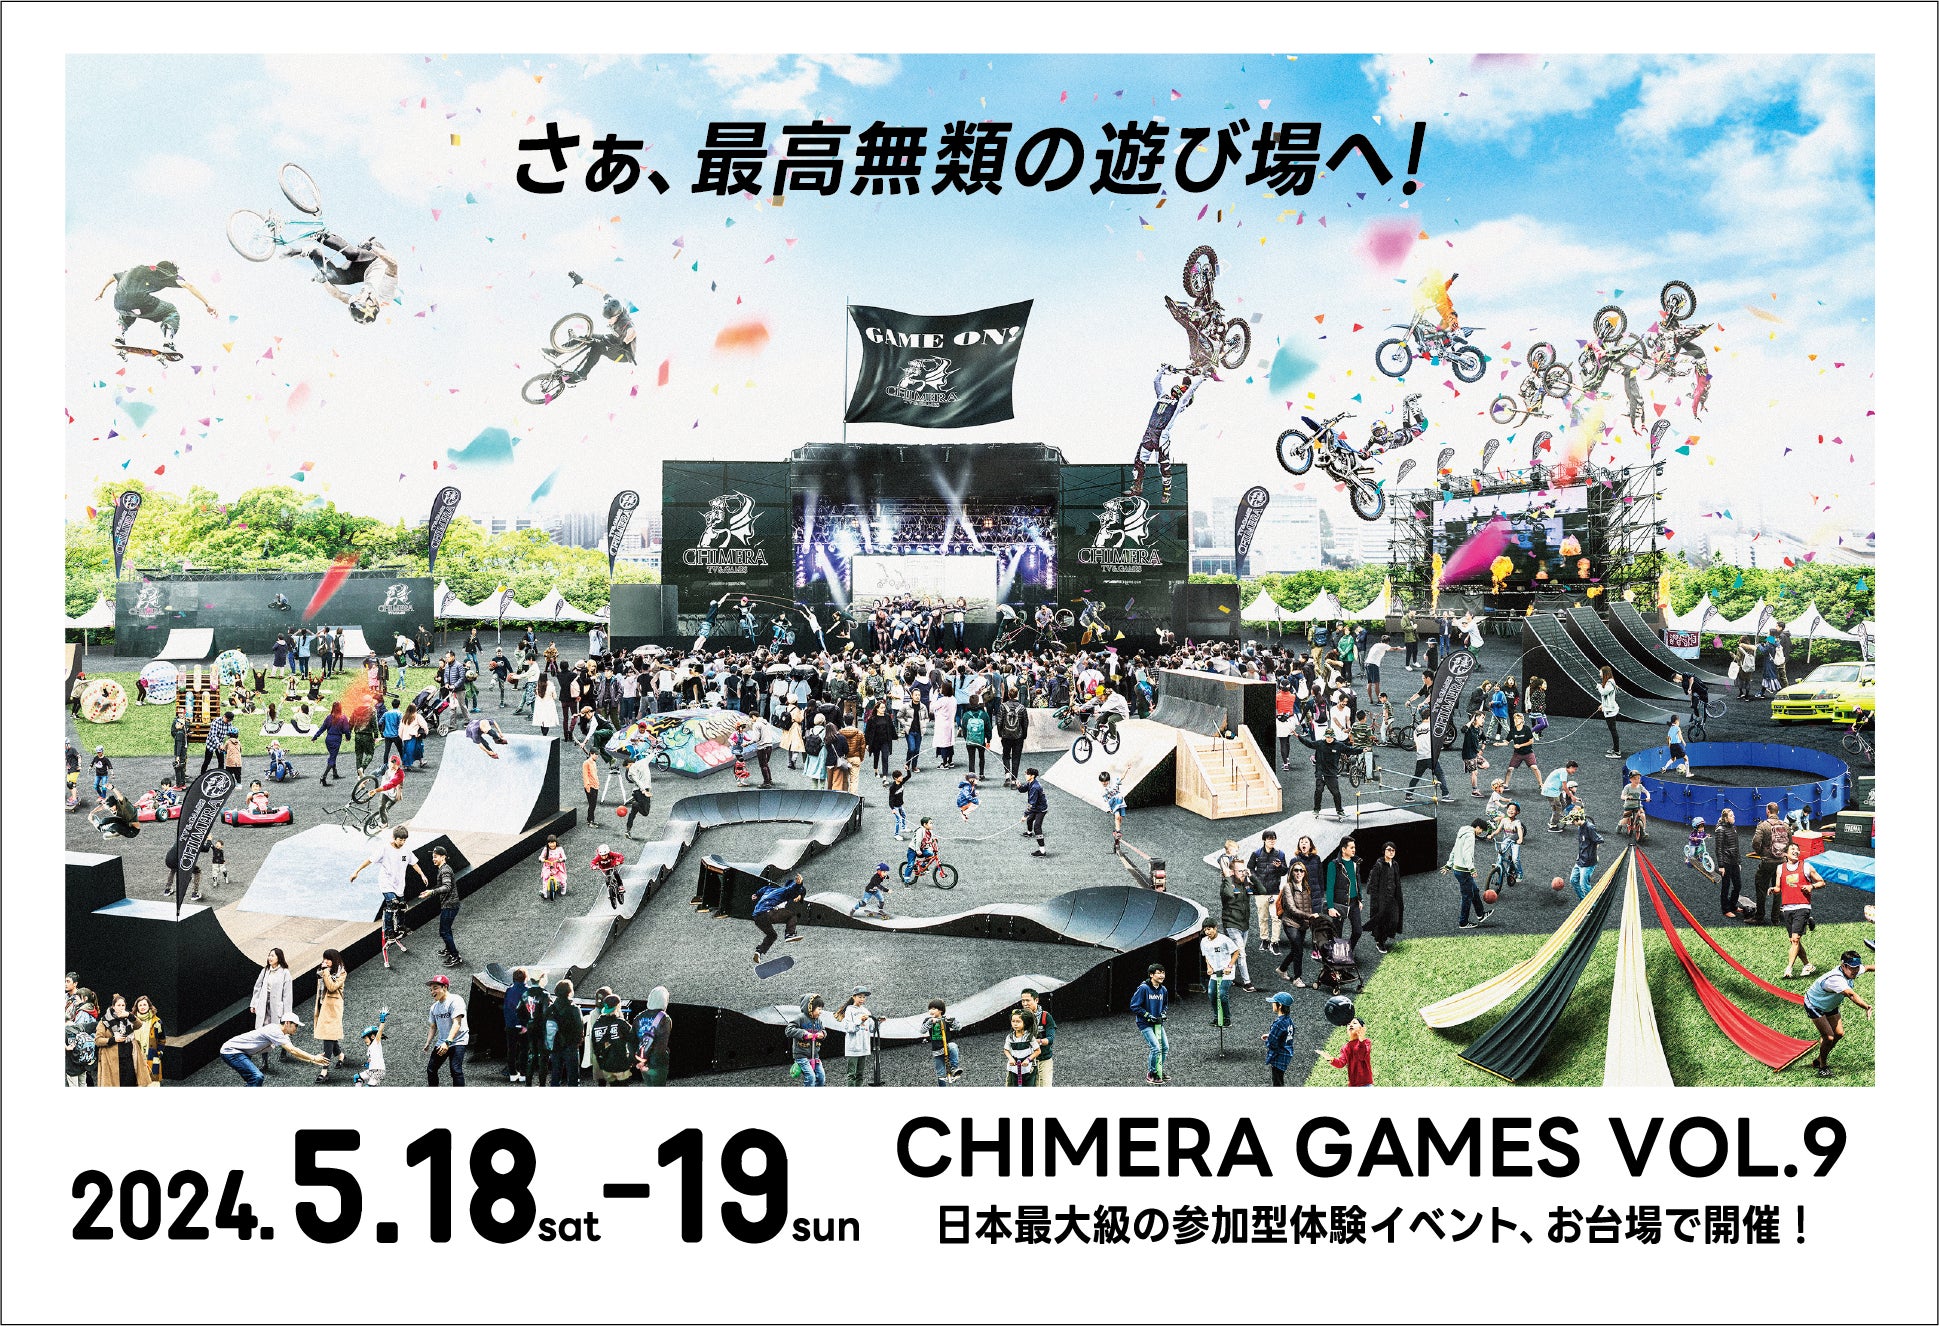 ドクターエア サポート決定！アーバンスポーツの祭典「CHIMERA GAMES VOL.9」